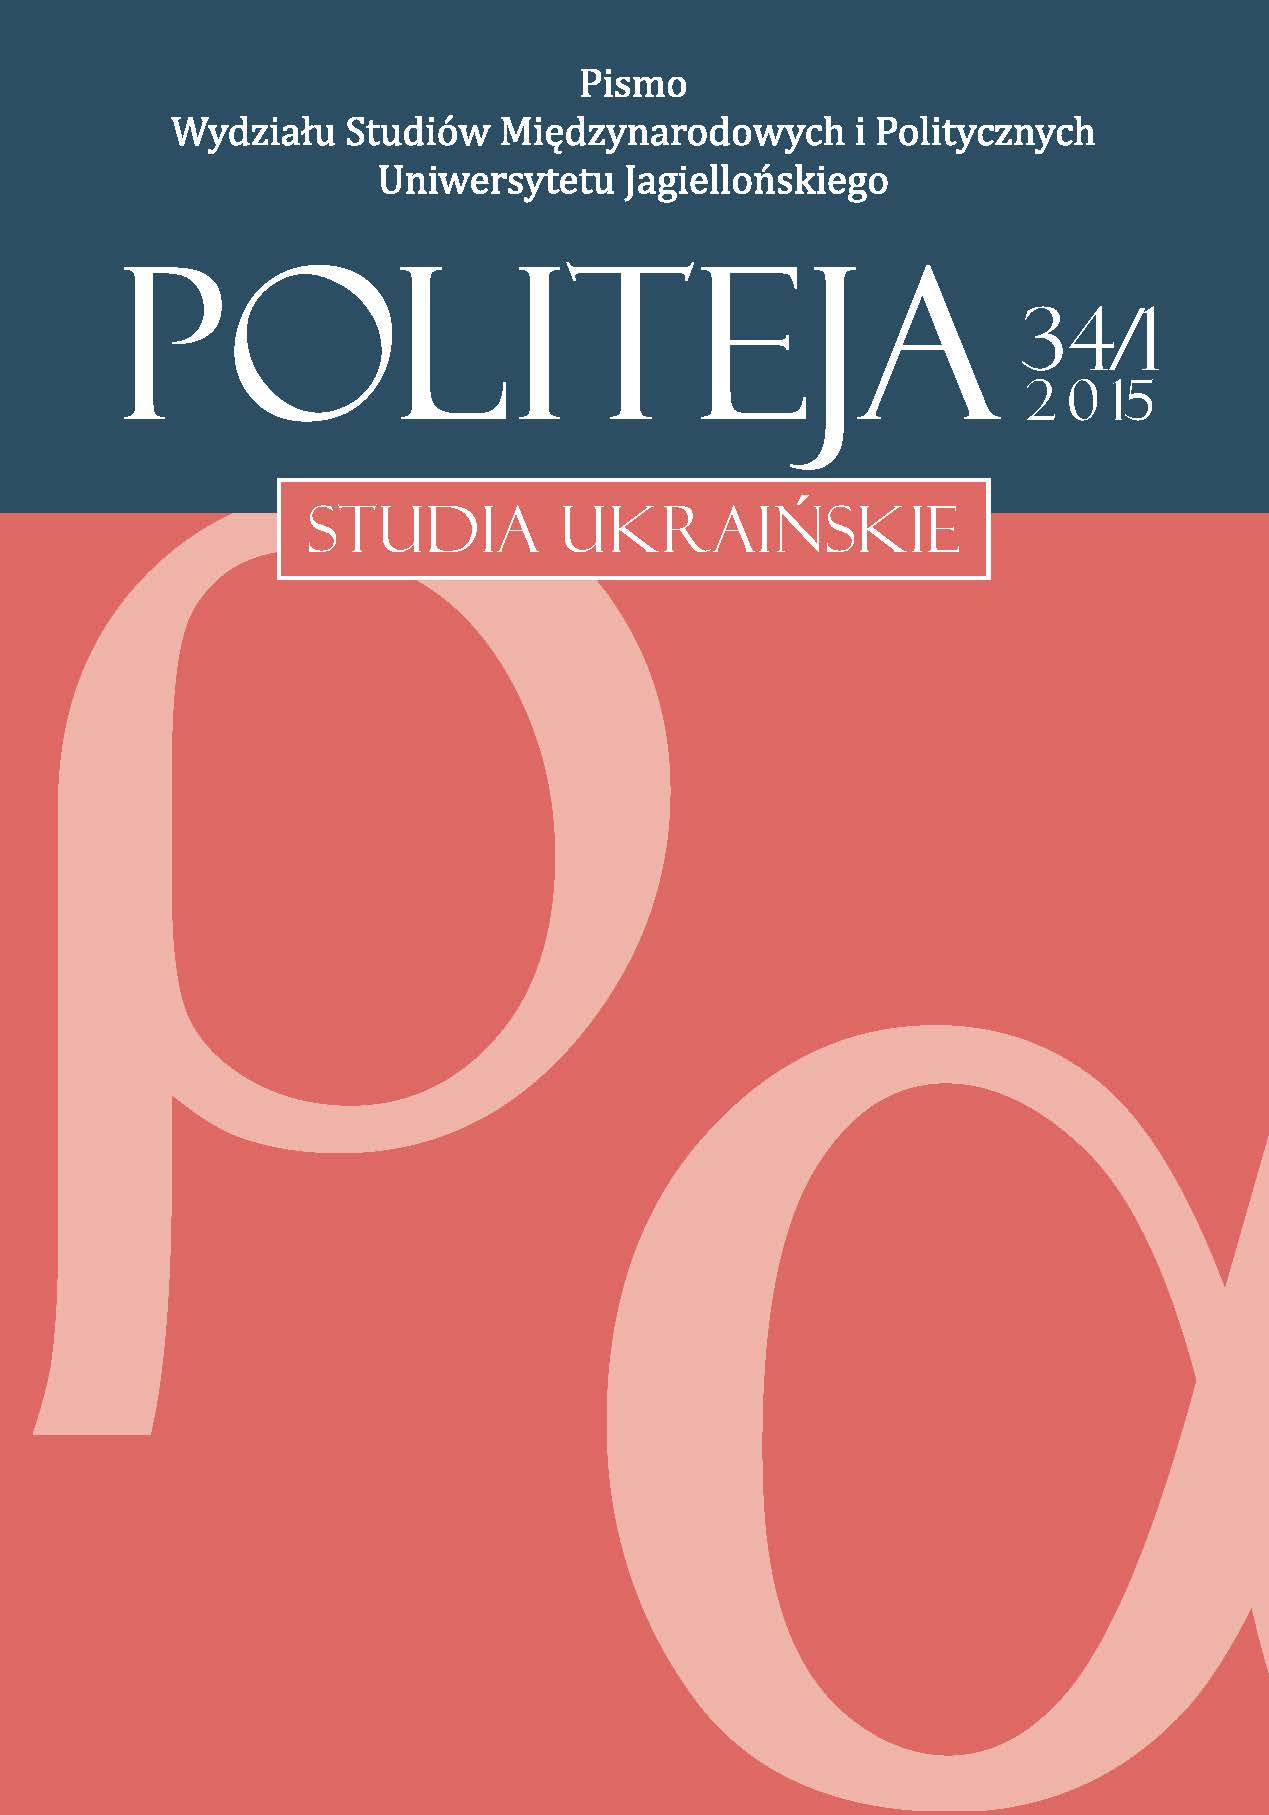 					View Vol. 12 No. 2 (34/1) (2015): Studia ukraińskie
				